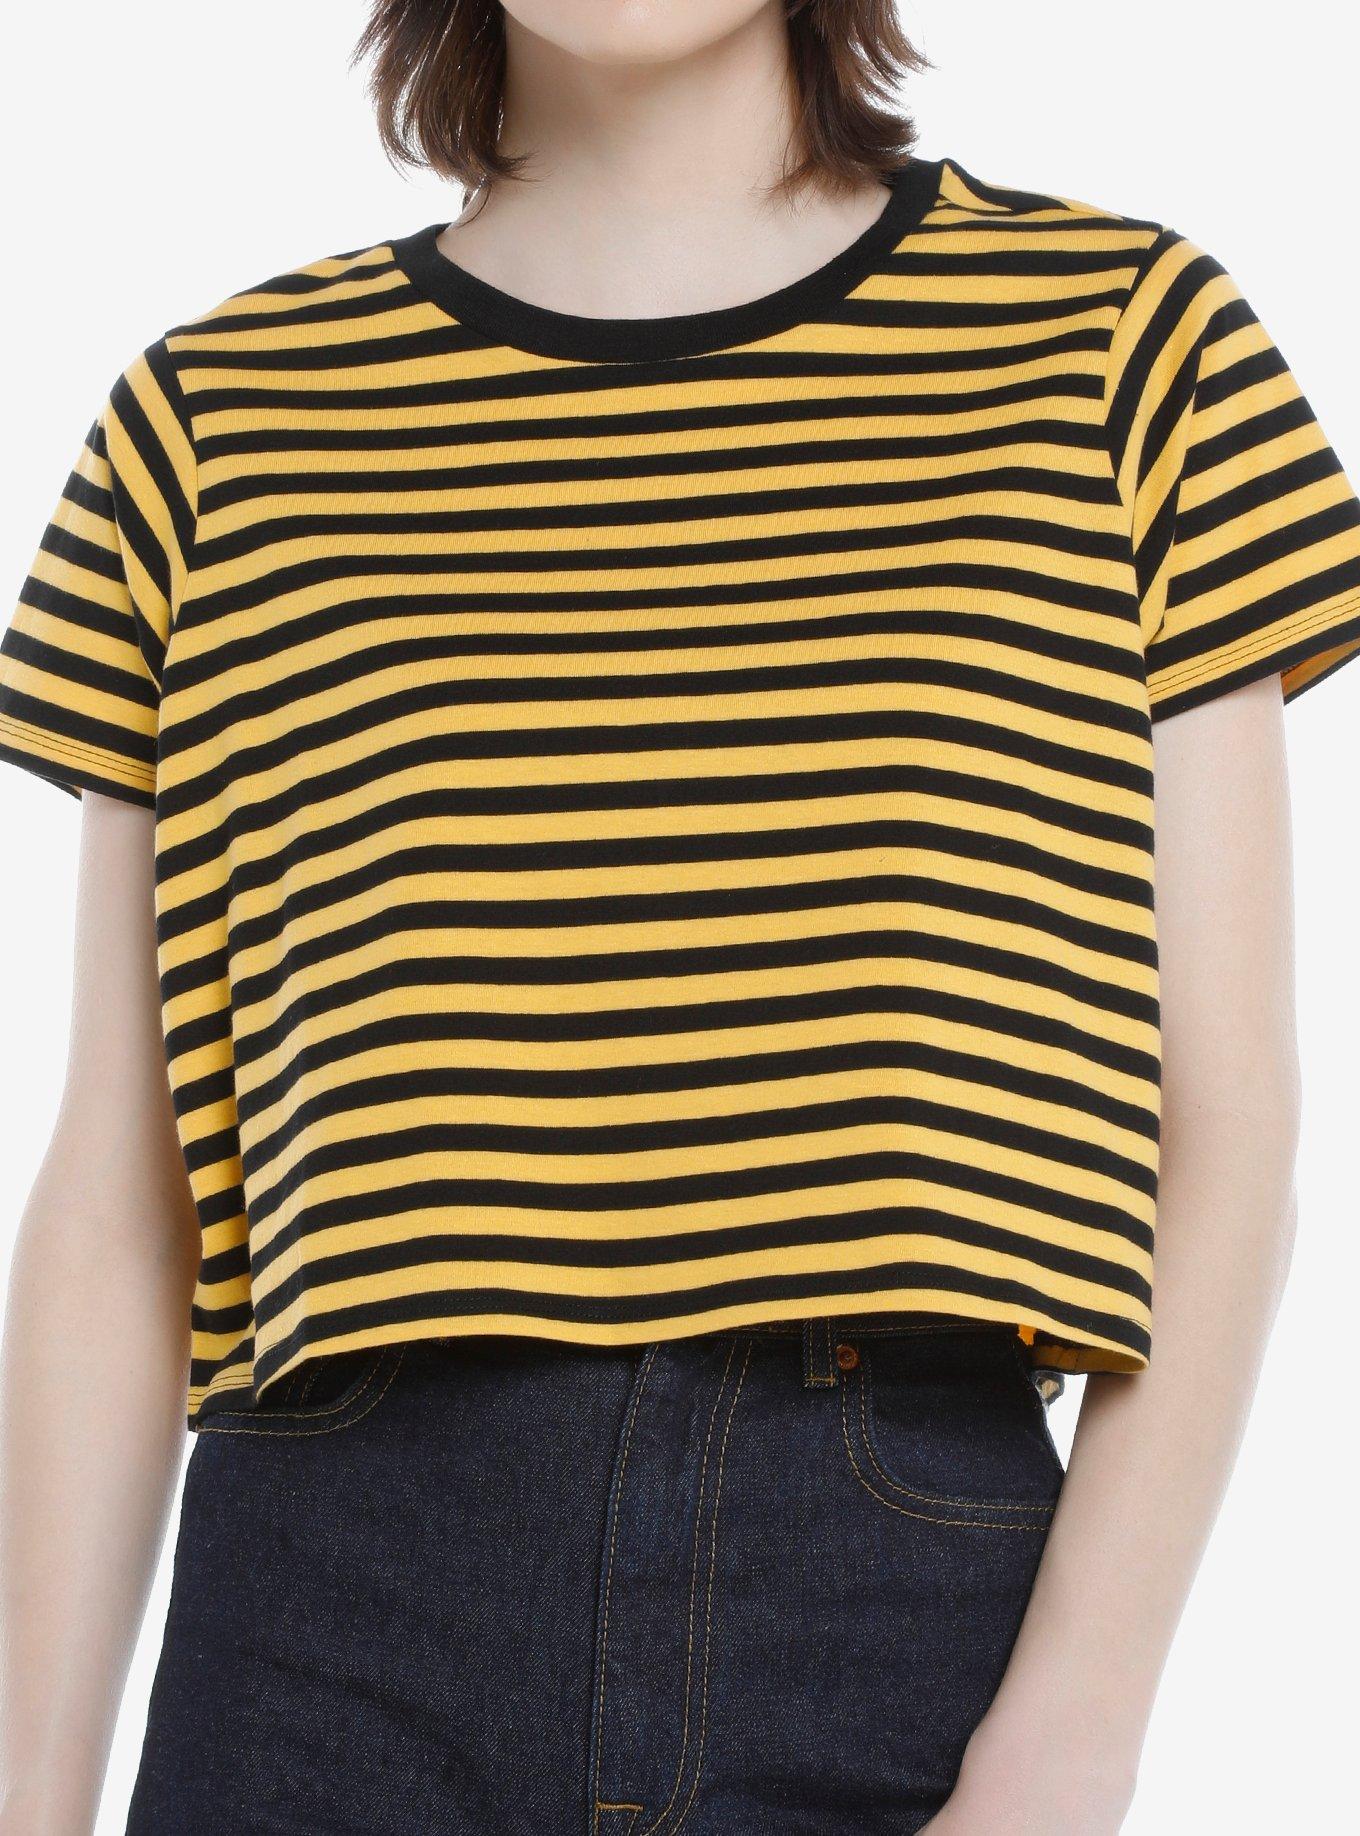 Black & Yellow Stripe Girls Crop T-Shirt, STRIPE - YELLOW, hi-res